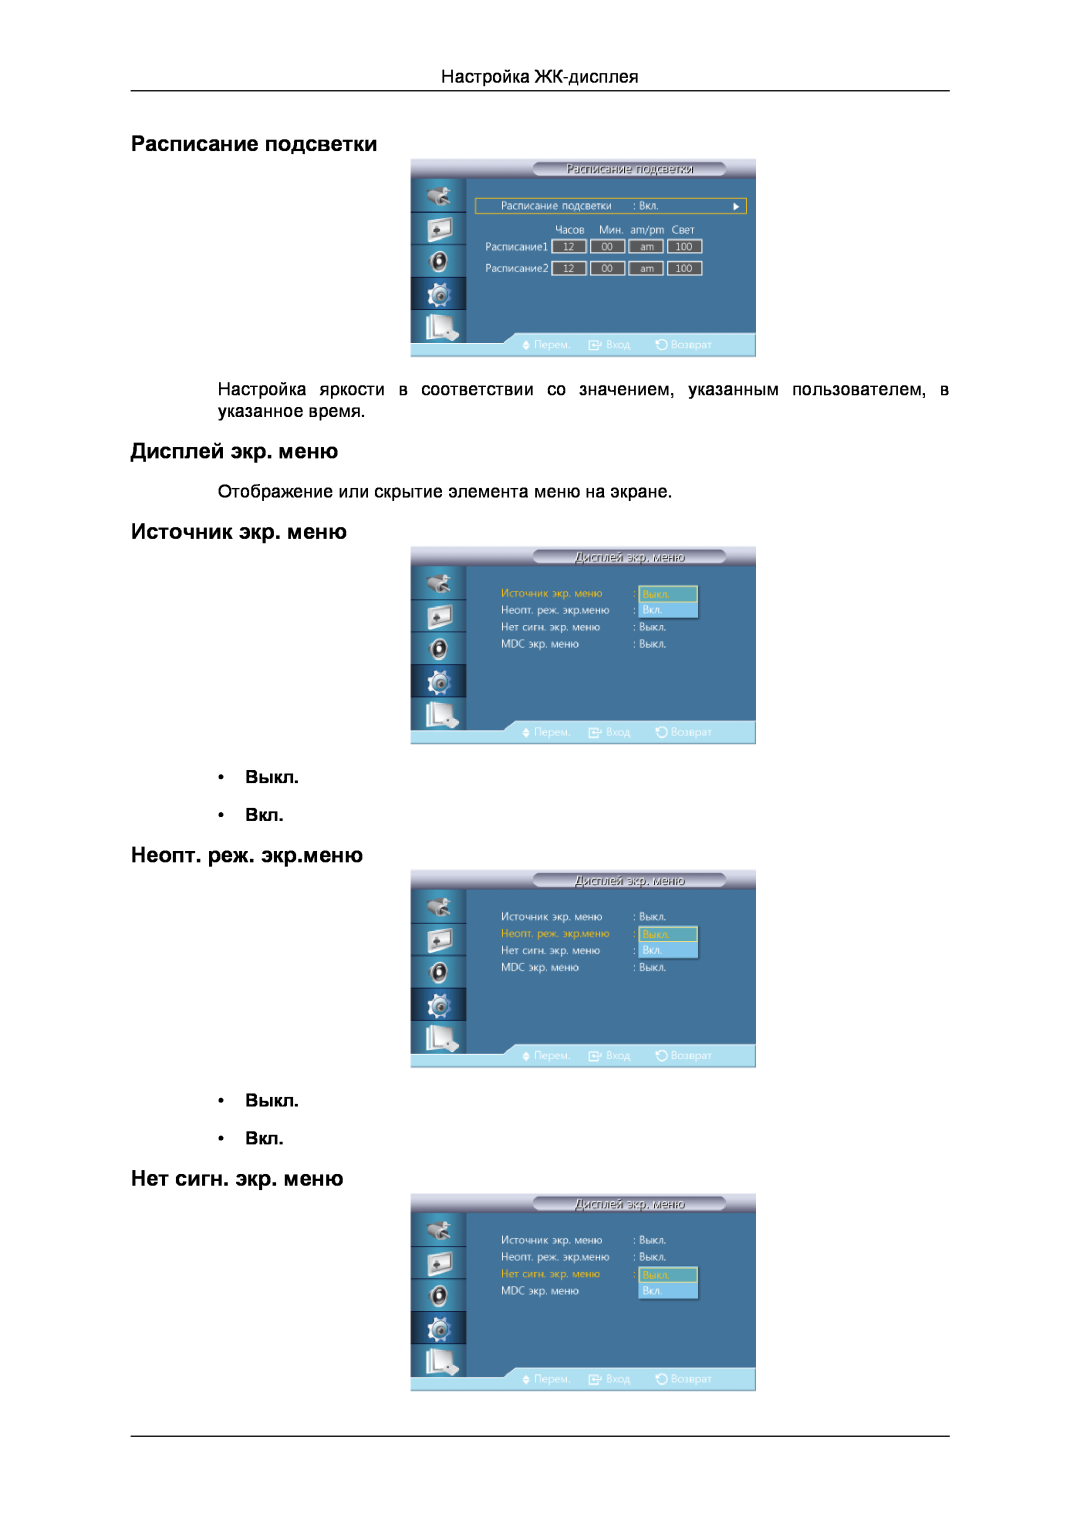 Samsung LH32CRTMBC/EN manual Расписание подсветки, Дисплей экр. меню, Источник экр. меню, Неопт. реж. экр.меню, Выкл Вкл 